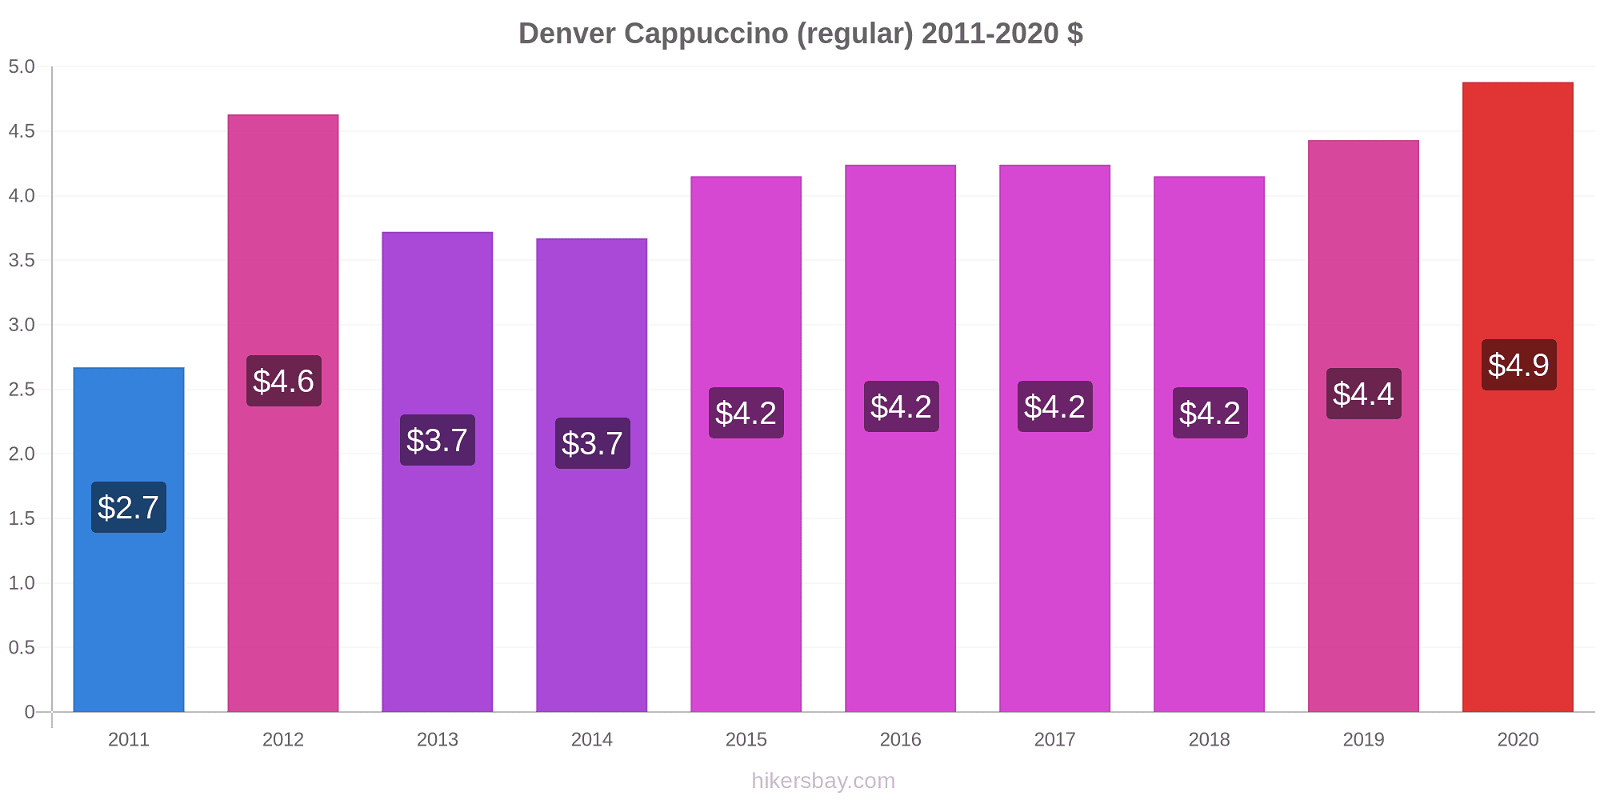 Denver variação de preço Capuccino (regular) hikersbay.com